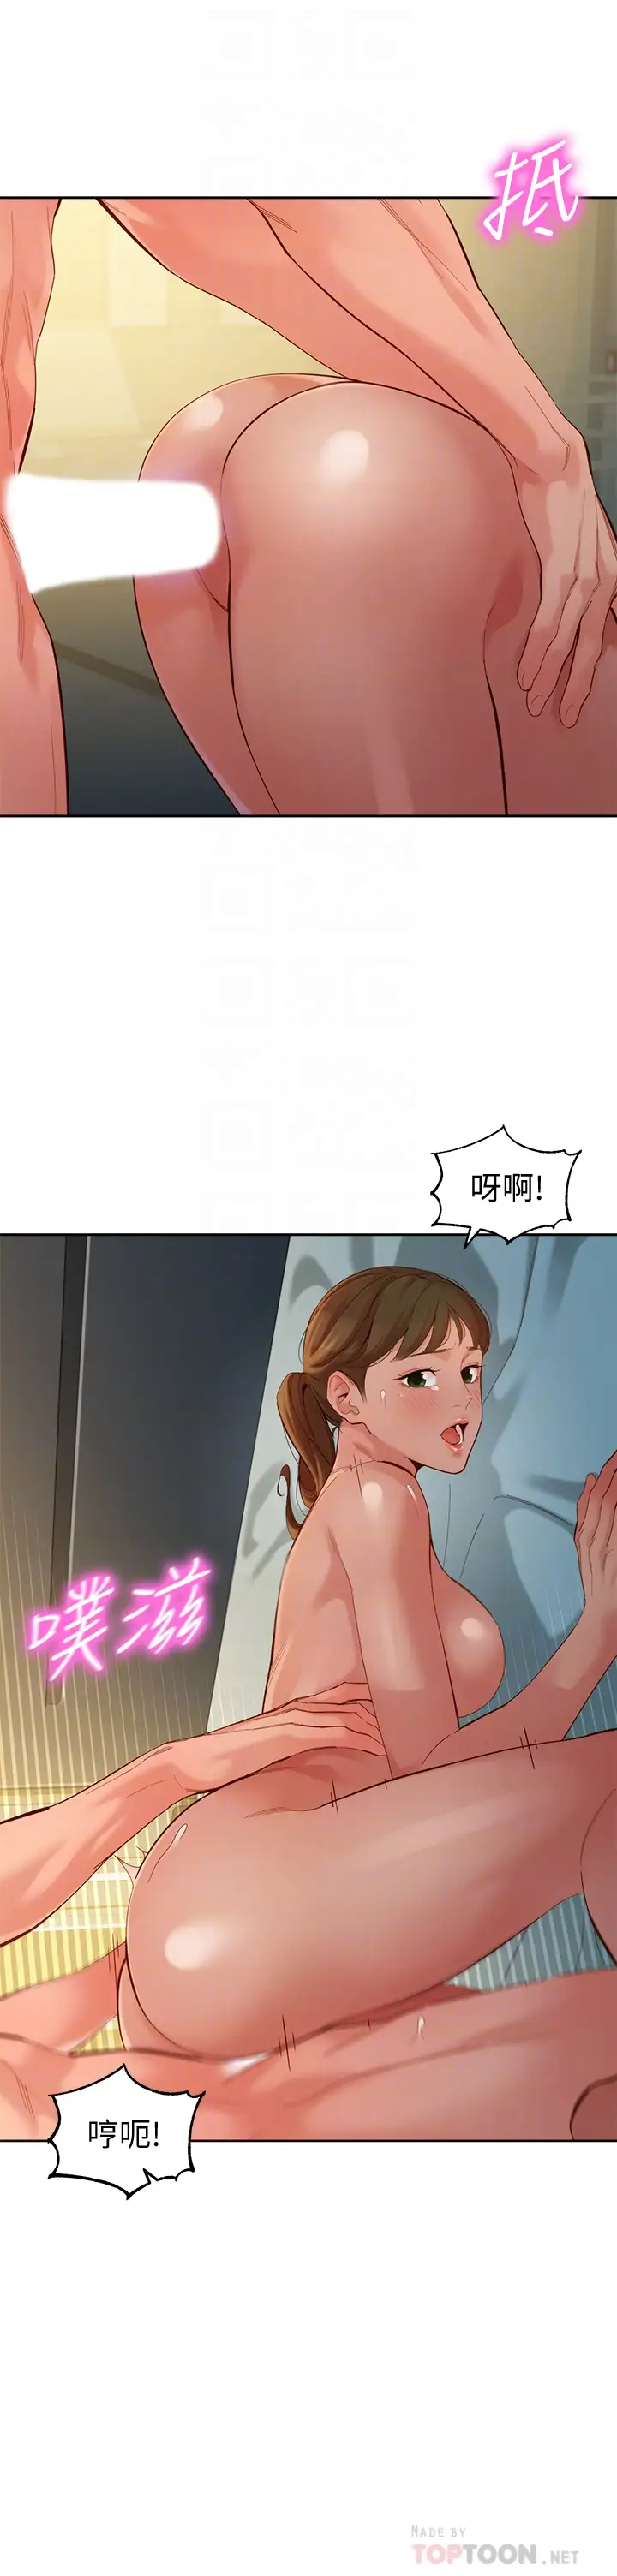 韩国污漫画 女神寫真 第52话淫靡的双飞体验 4